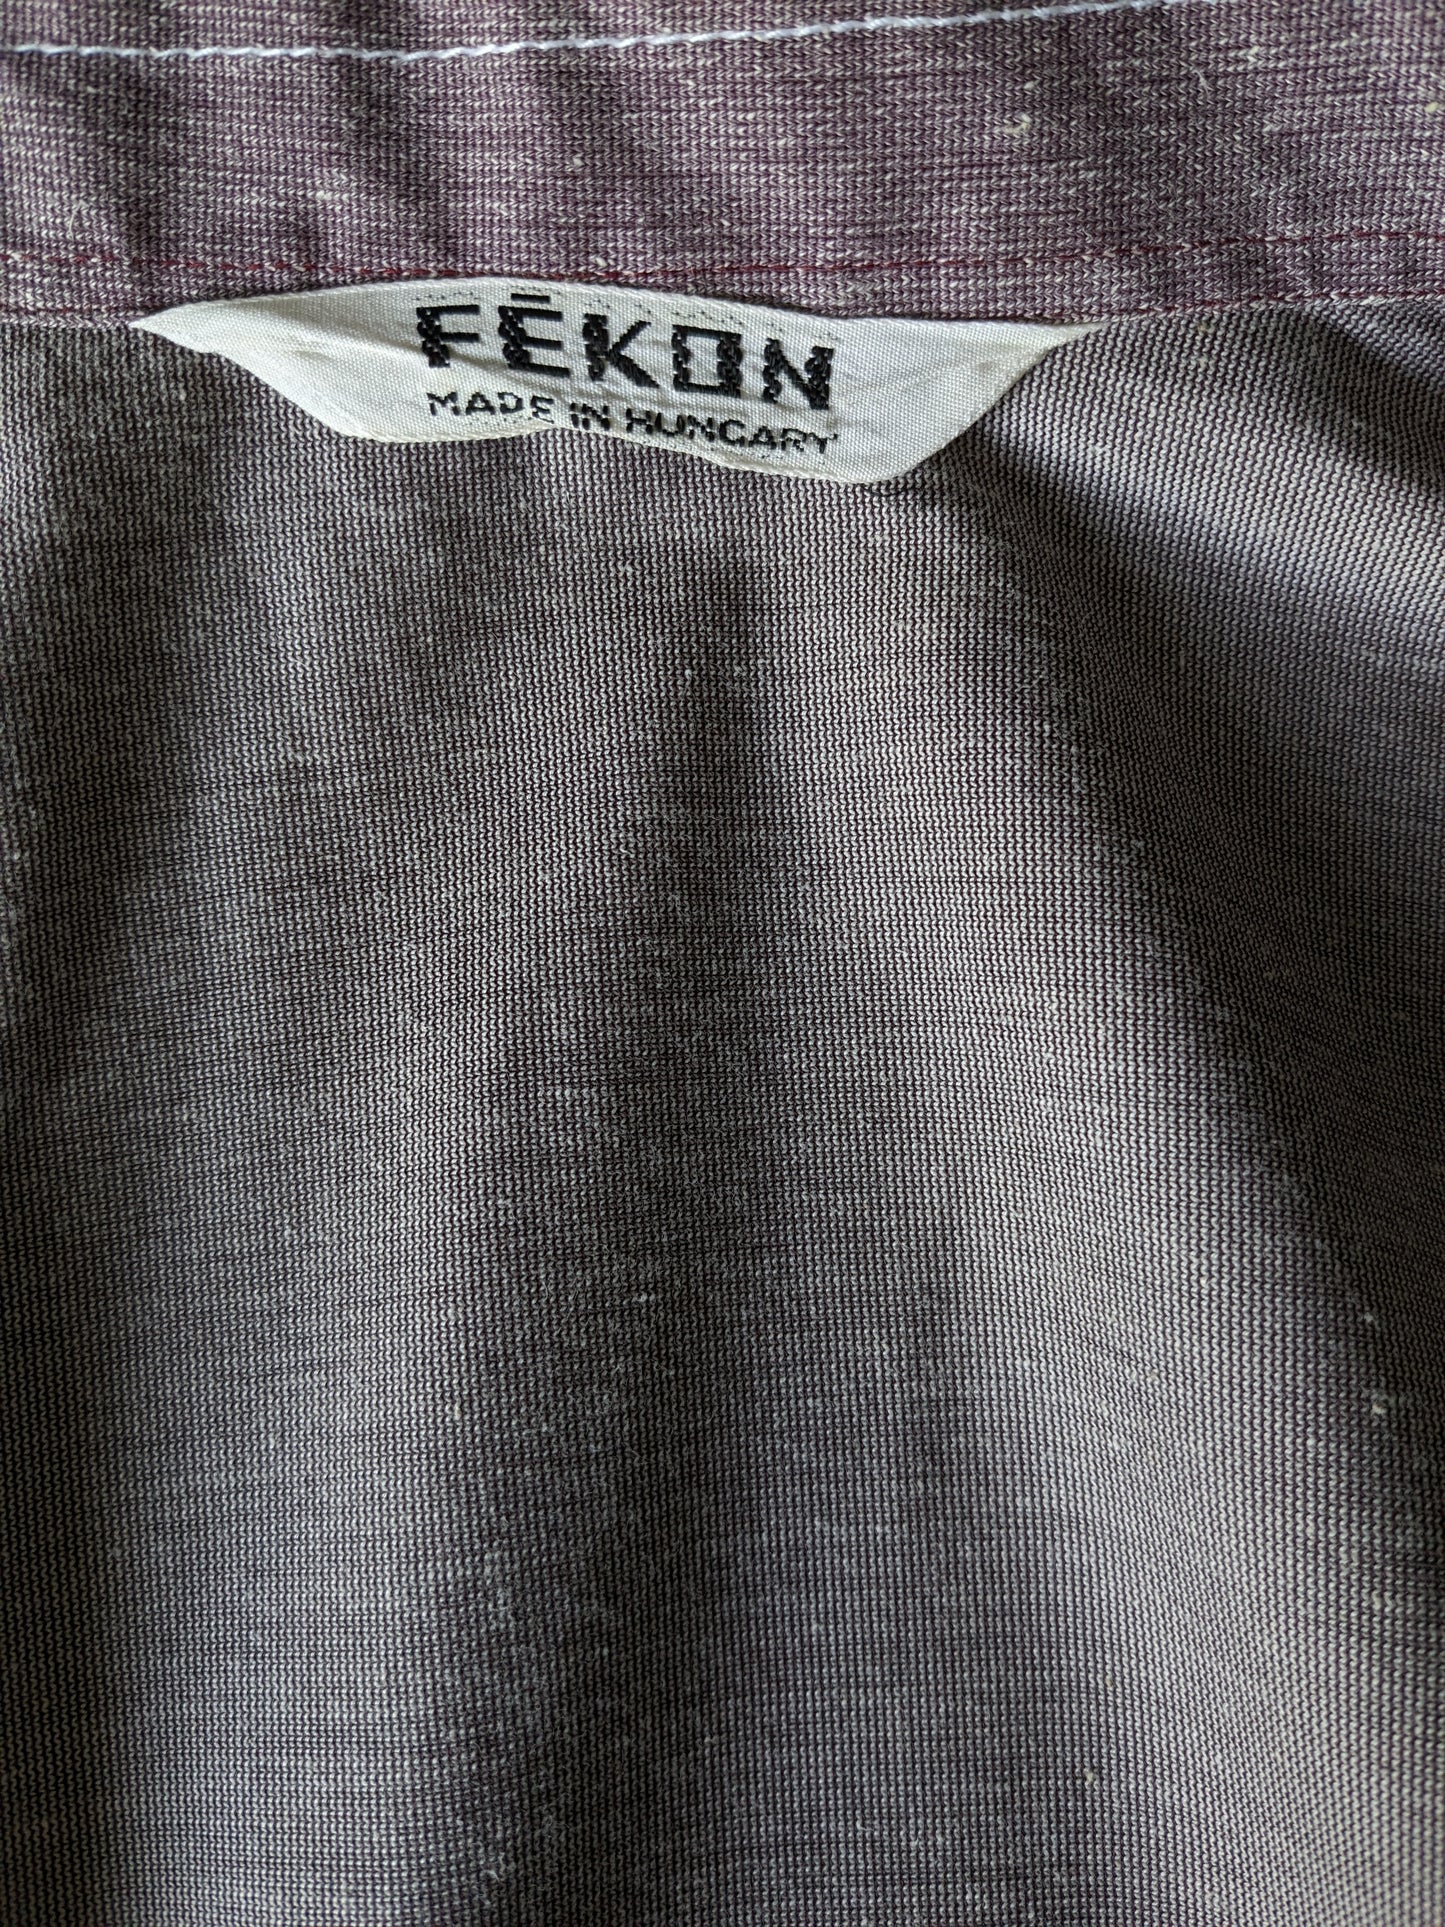 Vintage Fekon overhemd korte mouw met puntkraag en drukknopen. Paars Wit gemêleerd. Maat M.